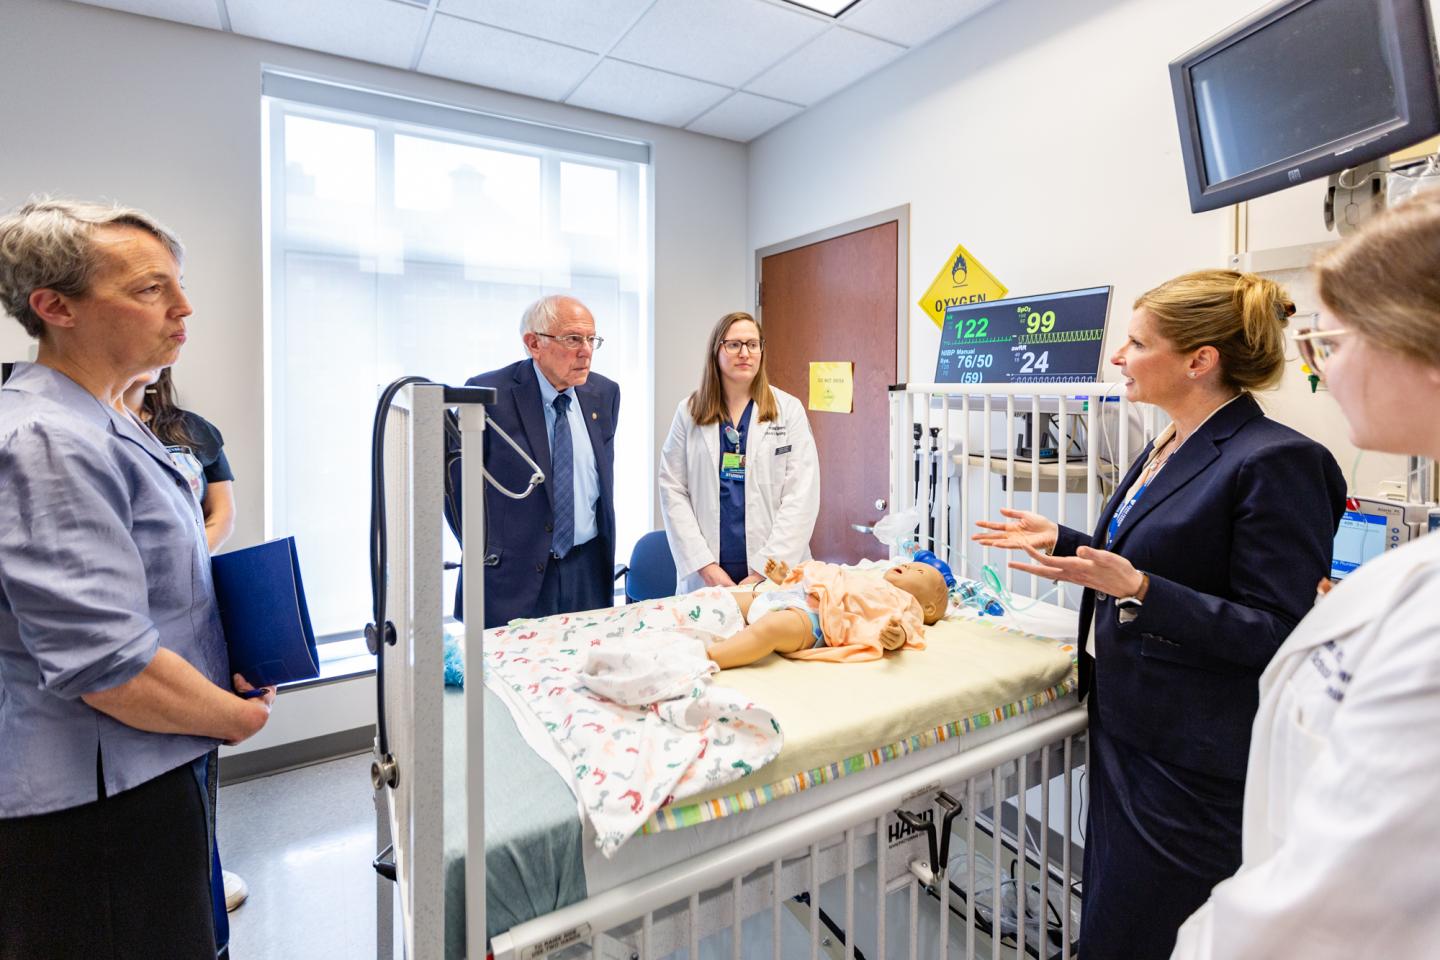 U.S. Sen. Bernie Sanders visits a nursing simulation lab